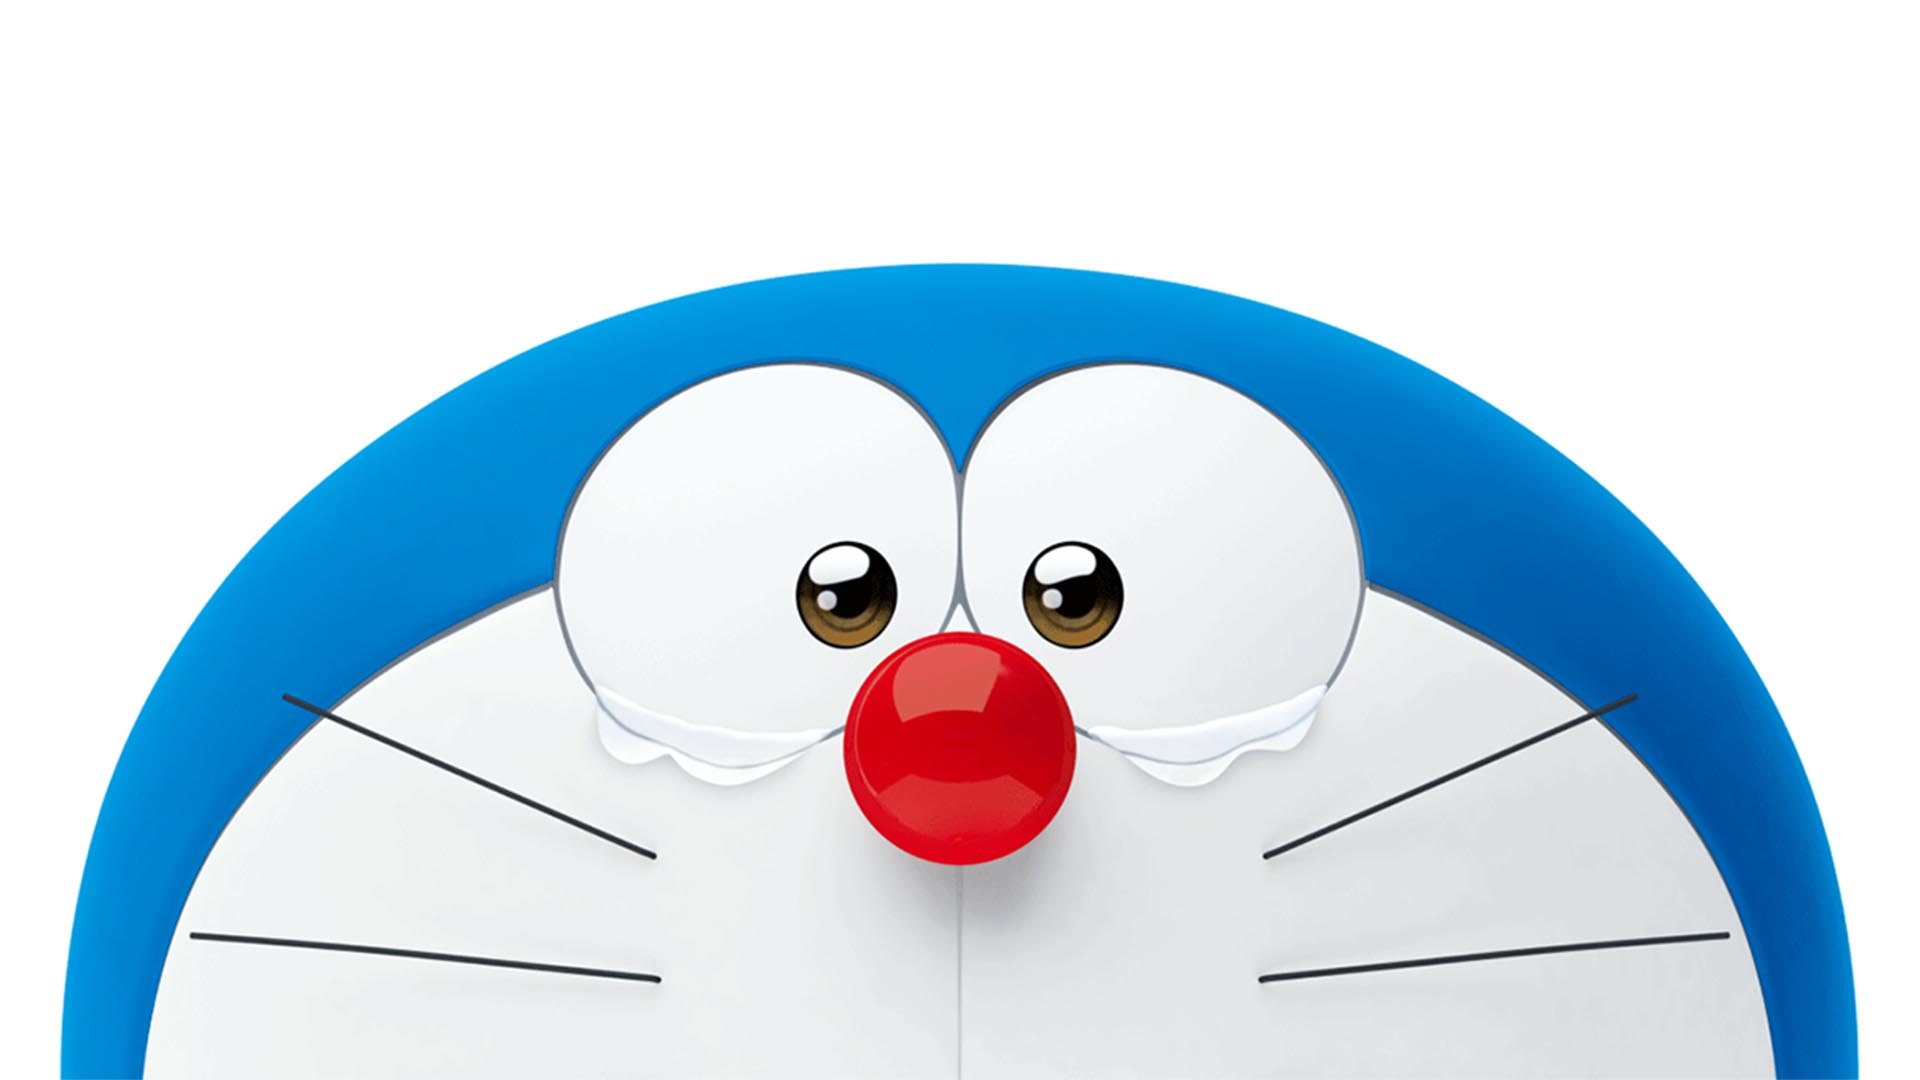 Doraemon wallpaper là gì? Đó chính là những bức ảnh nền được thiết kế đặc biệt về chú mèo máy thông minh này, làm cho màn hình điện thoại hay máy tính của bạn trở nên thật sự đặc biệt và thu hút mọi ánh nhìn. Với những hình ảnh độc đáo và sắc màu, hình nền Doraemon wallpaper sẽ giúp bạn tận hưởng một không gian hoàn toàn mới mẻ và thú vị. Hãy tải ngay để khám phá sự tuyệt vời của Doraemon wallpaper.